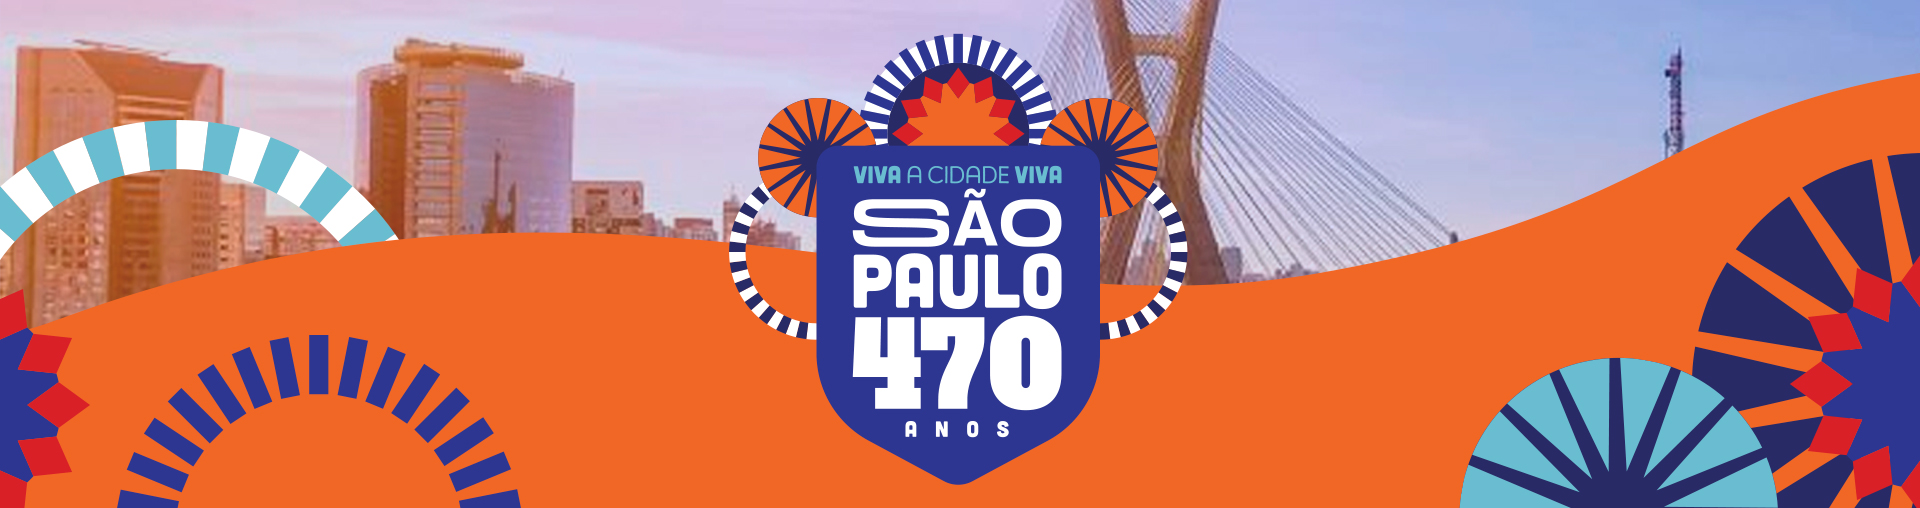 Na imagem consta o banner do aniversário da cidade de São Paulo.